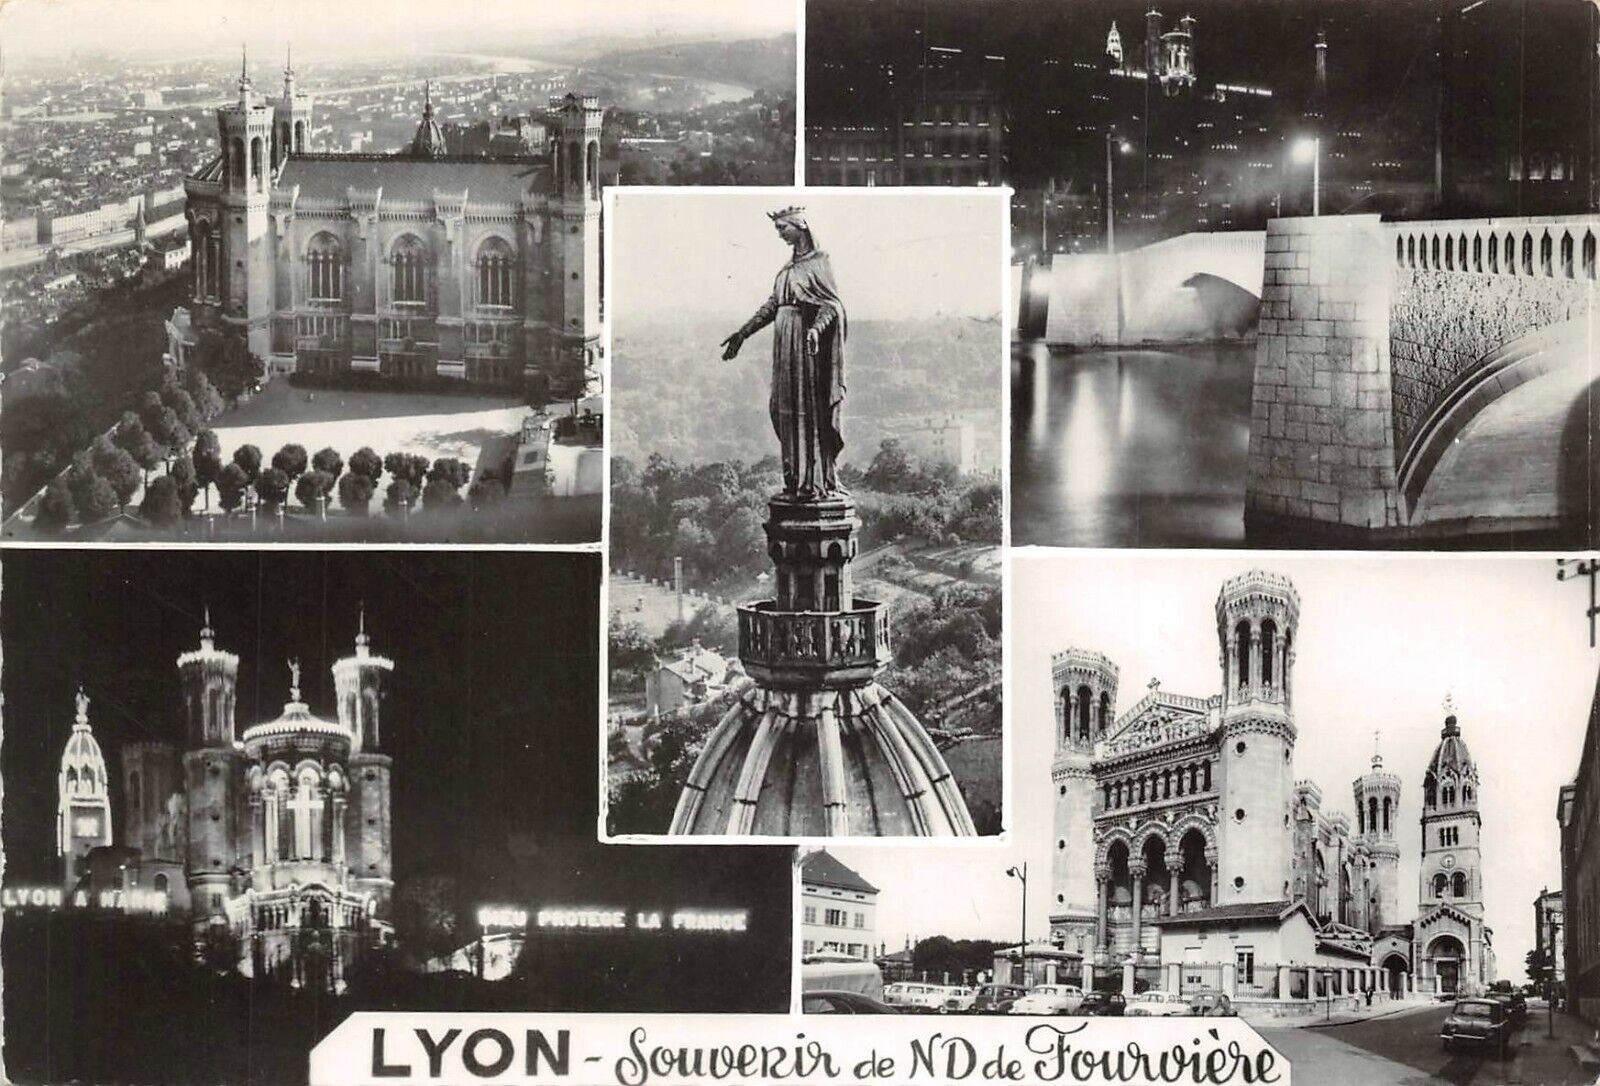 CPSM - LYON - souvenir of ND de Fourvière (134010)